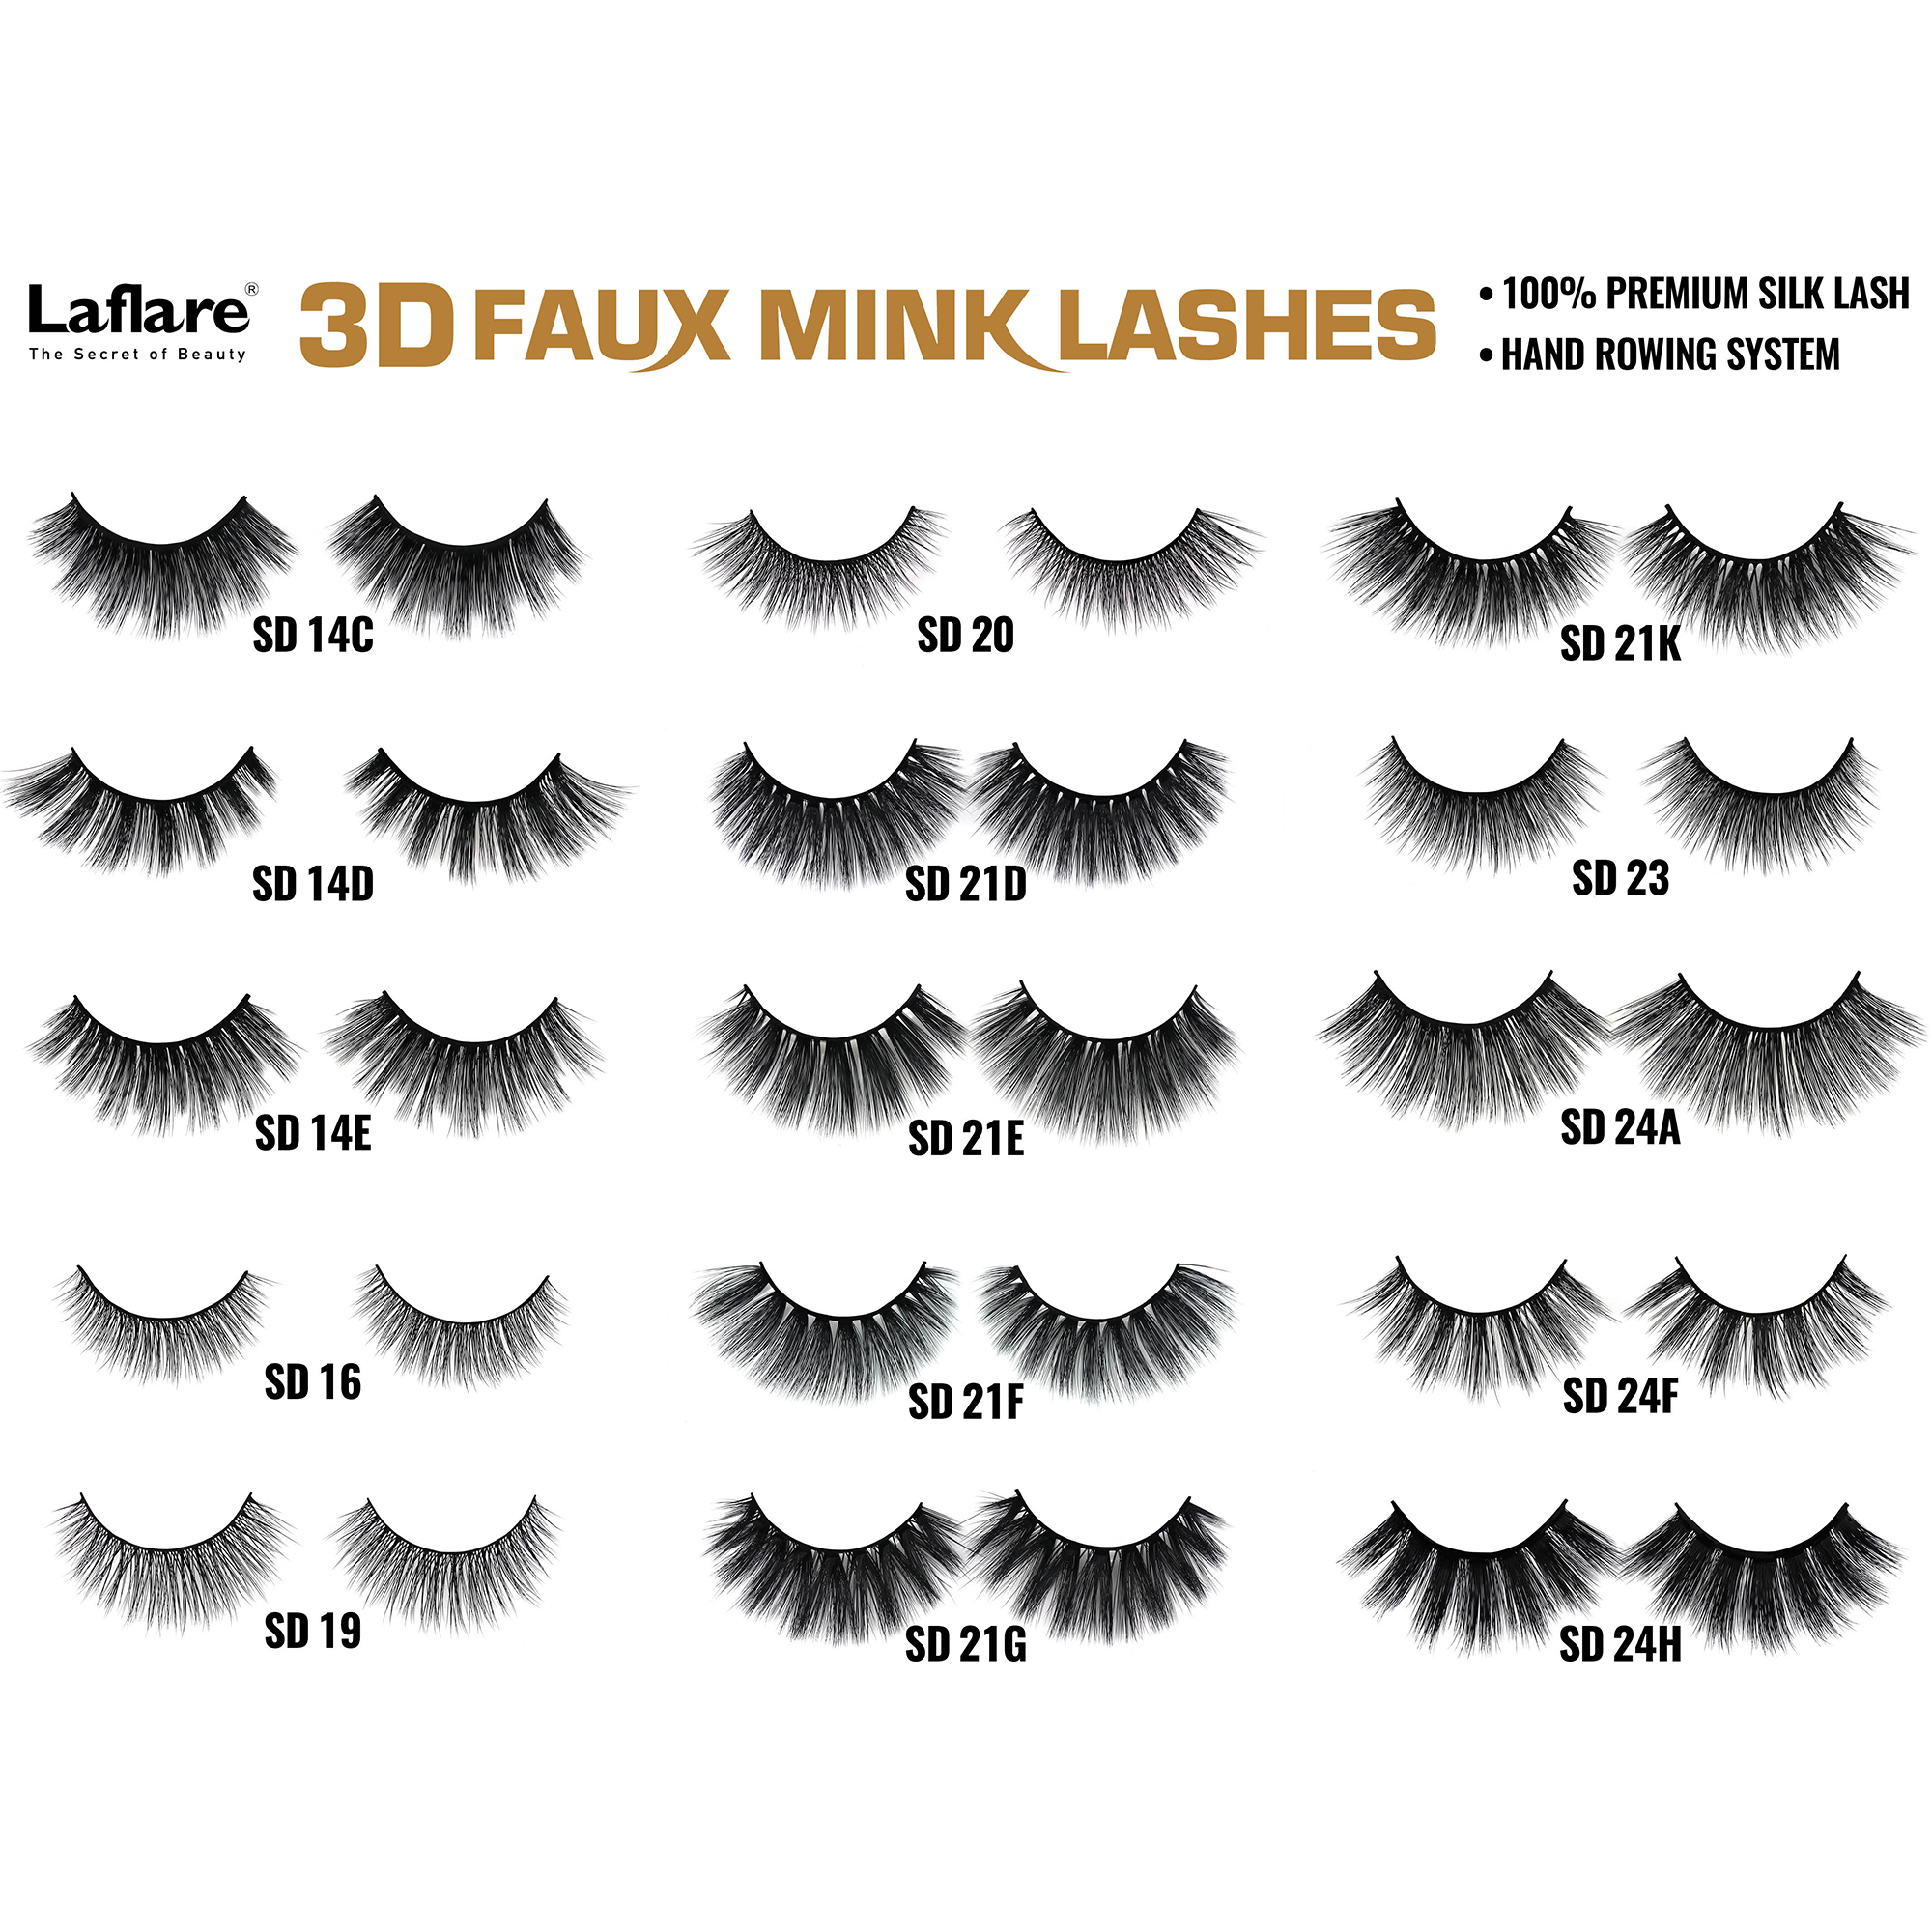 LAFLARE 3d Faux Mink Lashes - SD24H